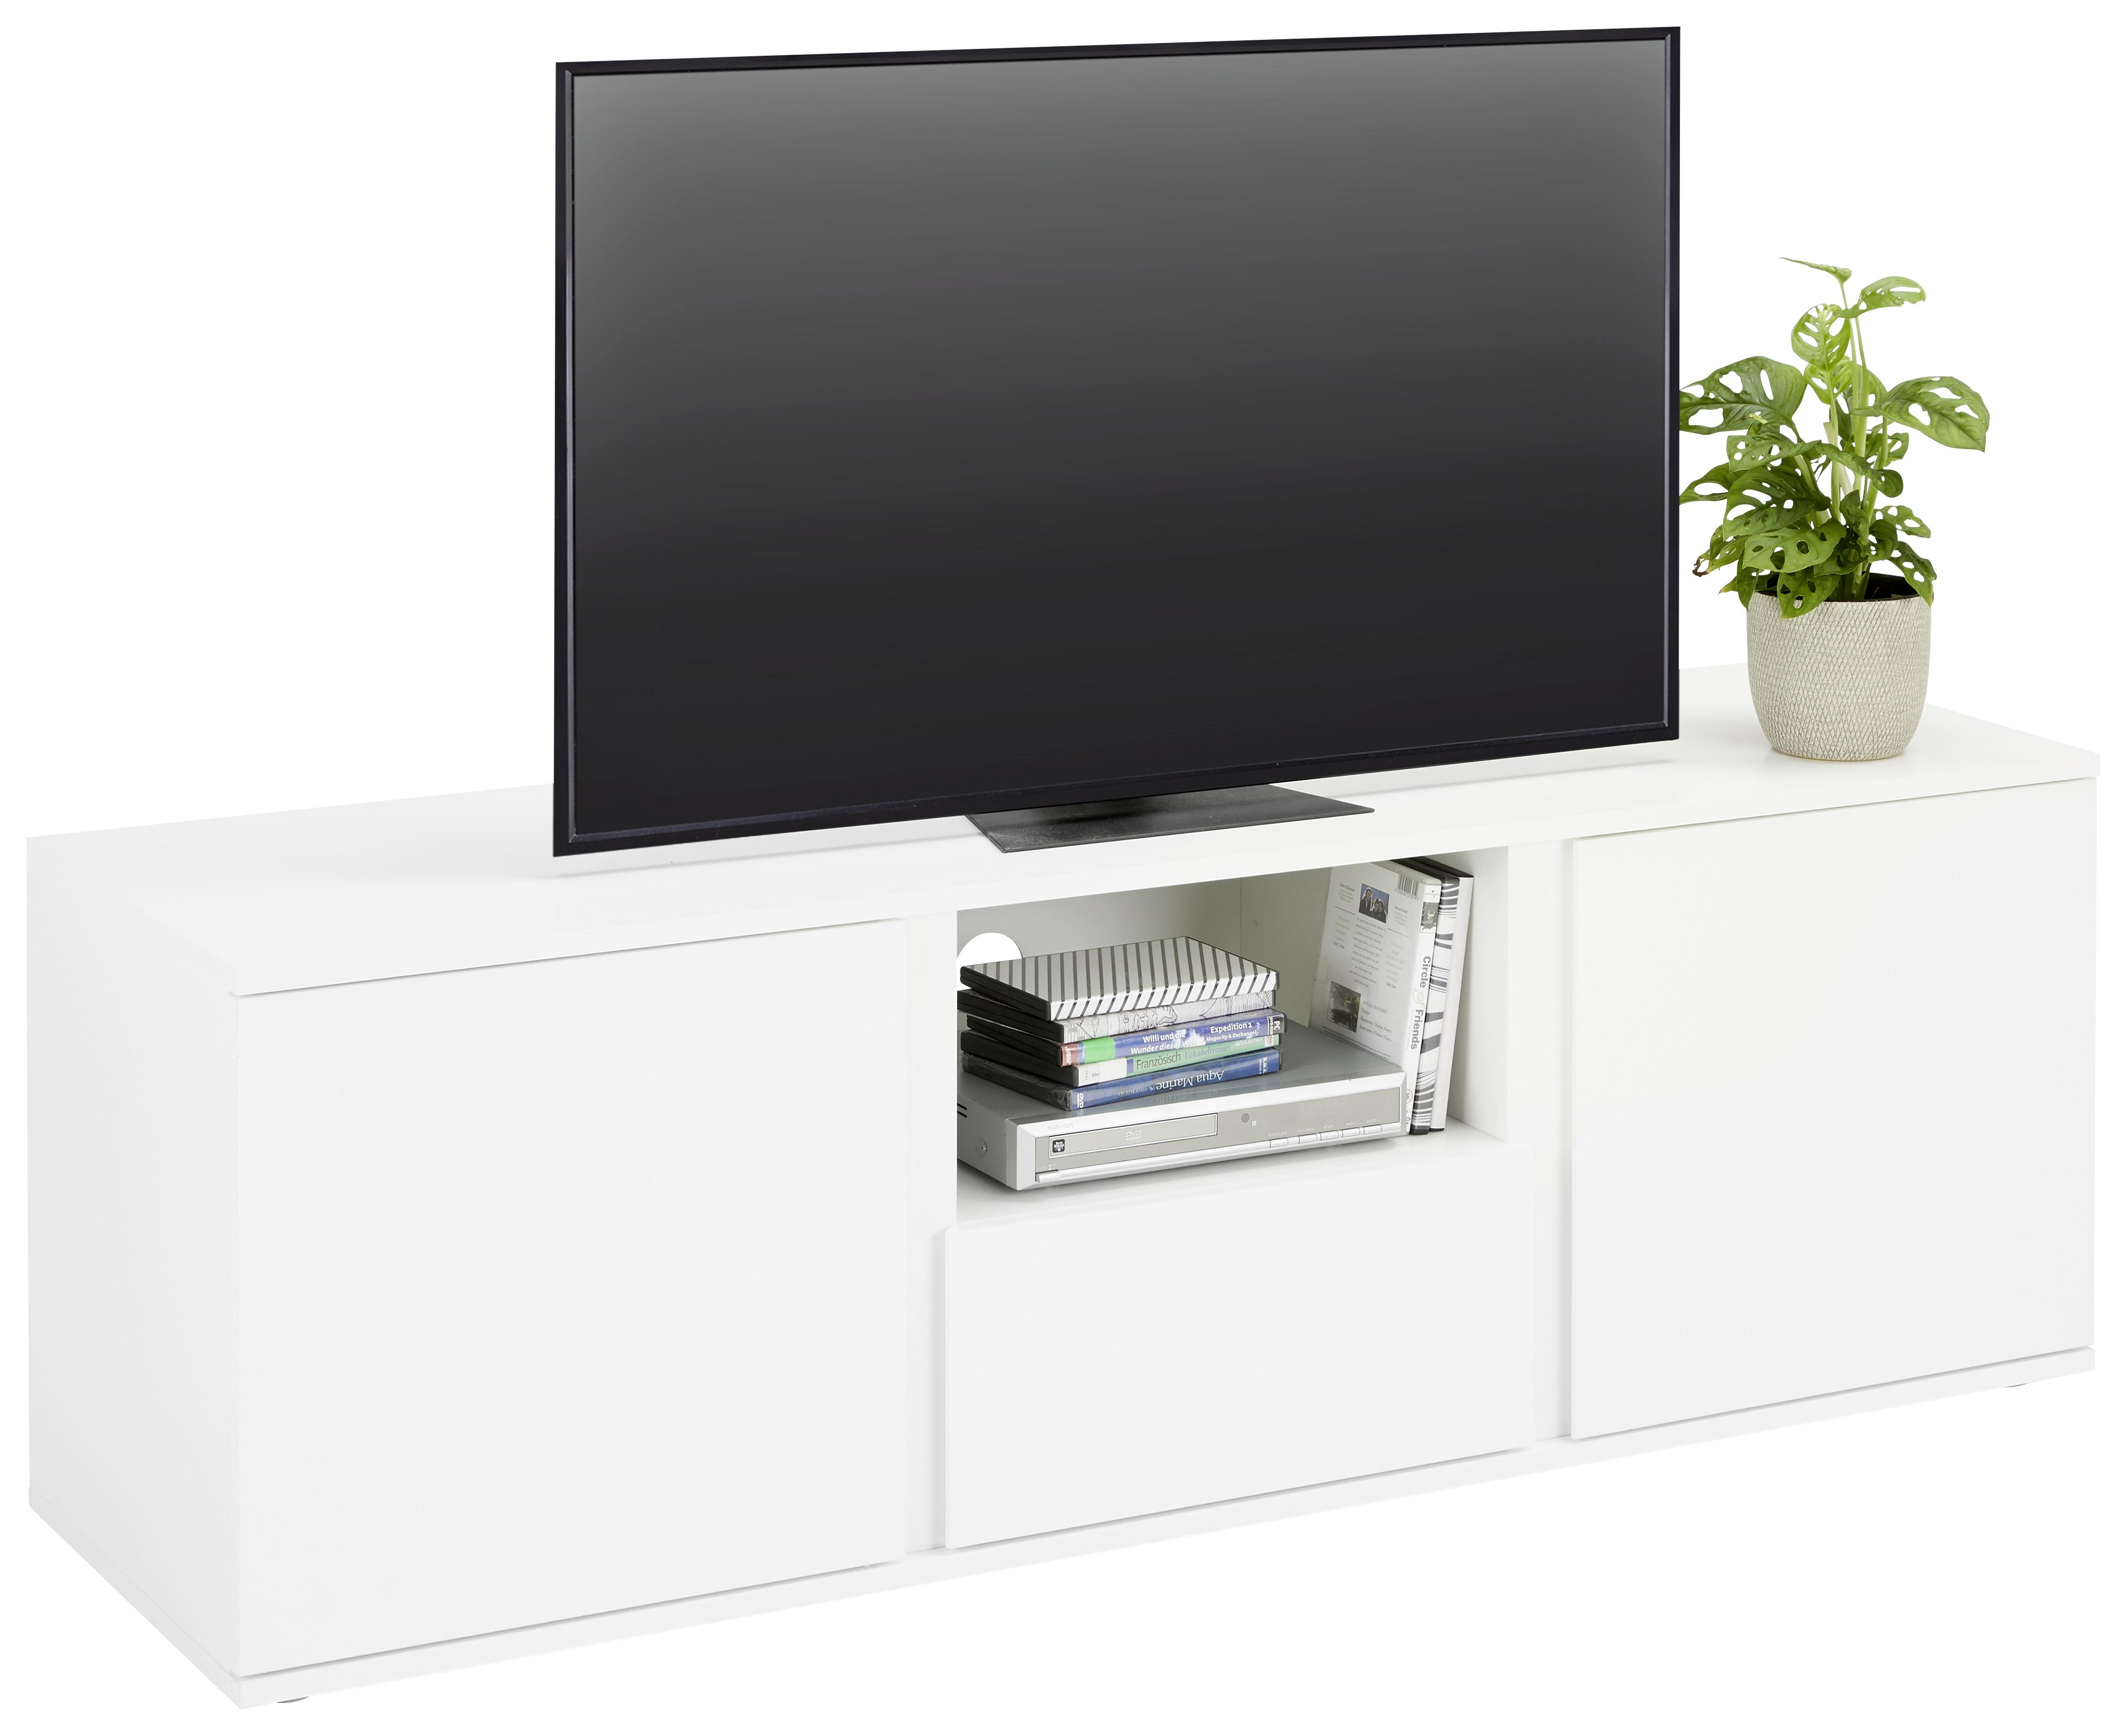 Lowboard in Weiß - Weiß/Grau, MODERN, Holzwerkstoff/Kunststoff (150/50/43cm) - Modern Living